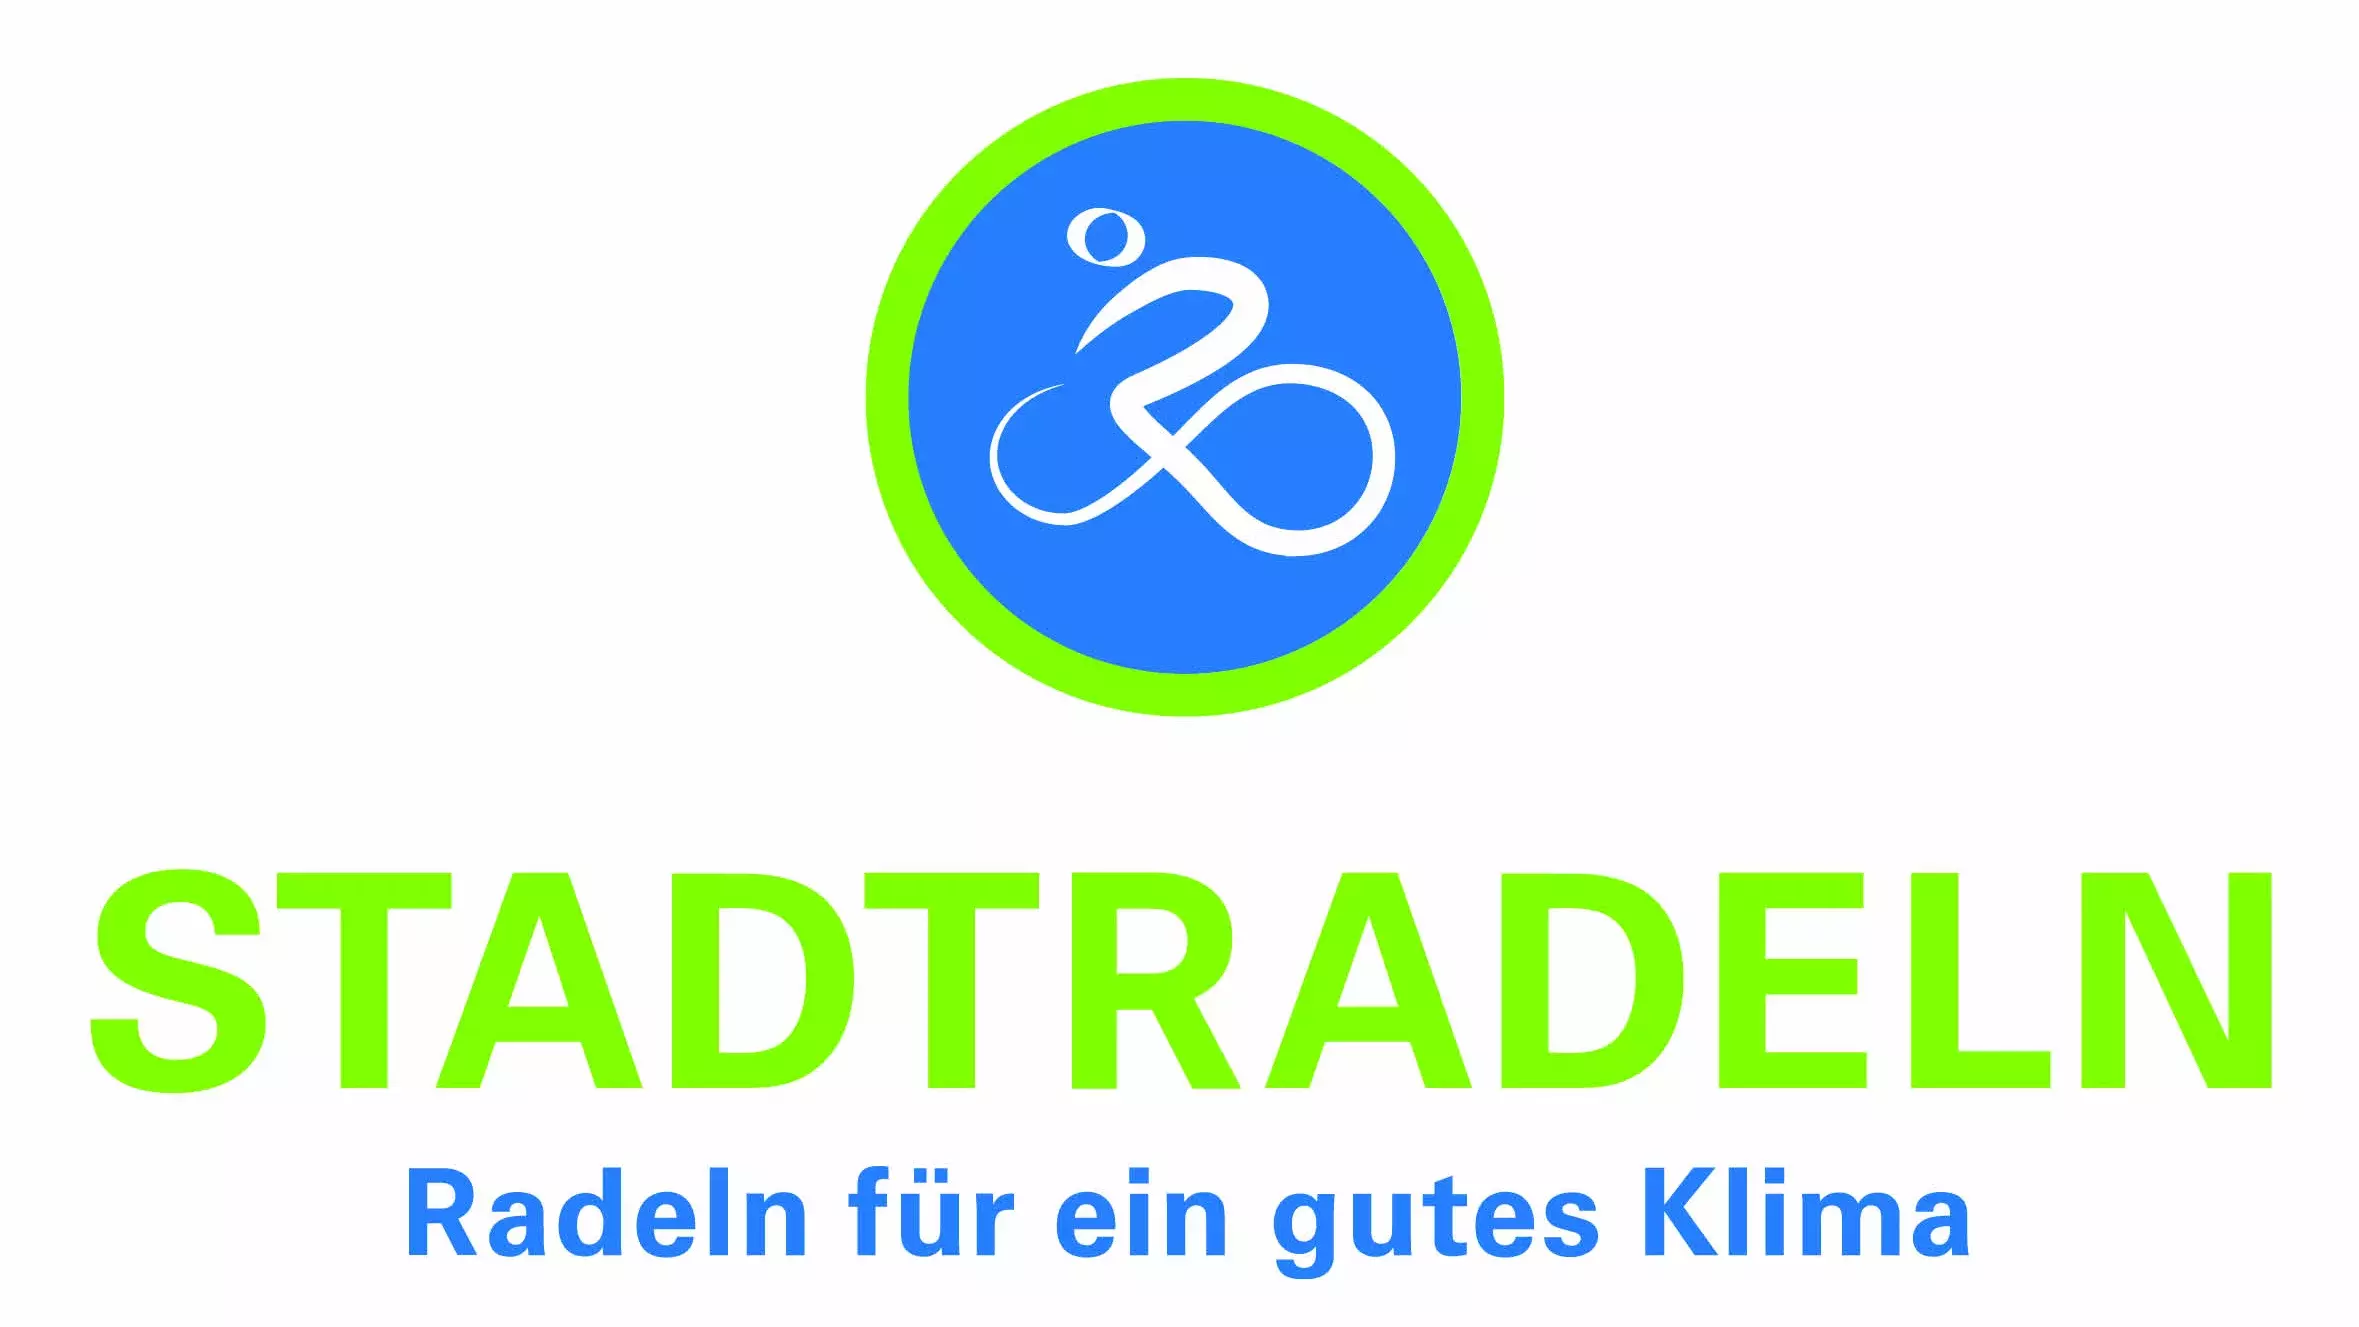 Logo der Kampagne Stadtradeln weißer Radfahrer in blauem Kreis mit grünem Rand